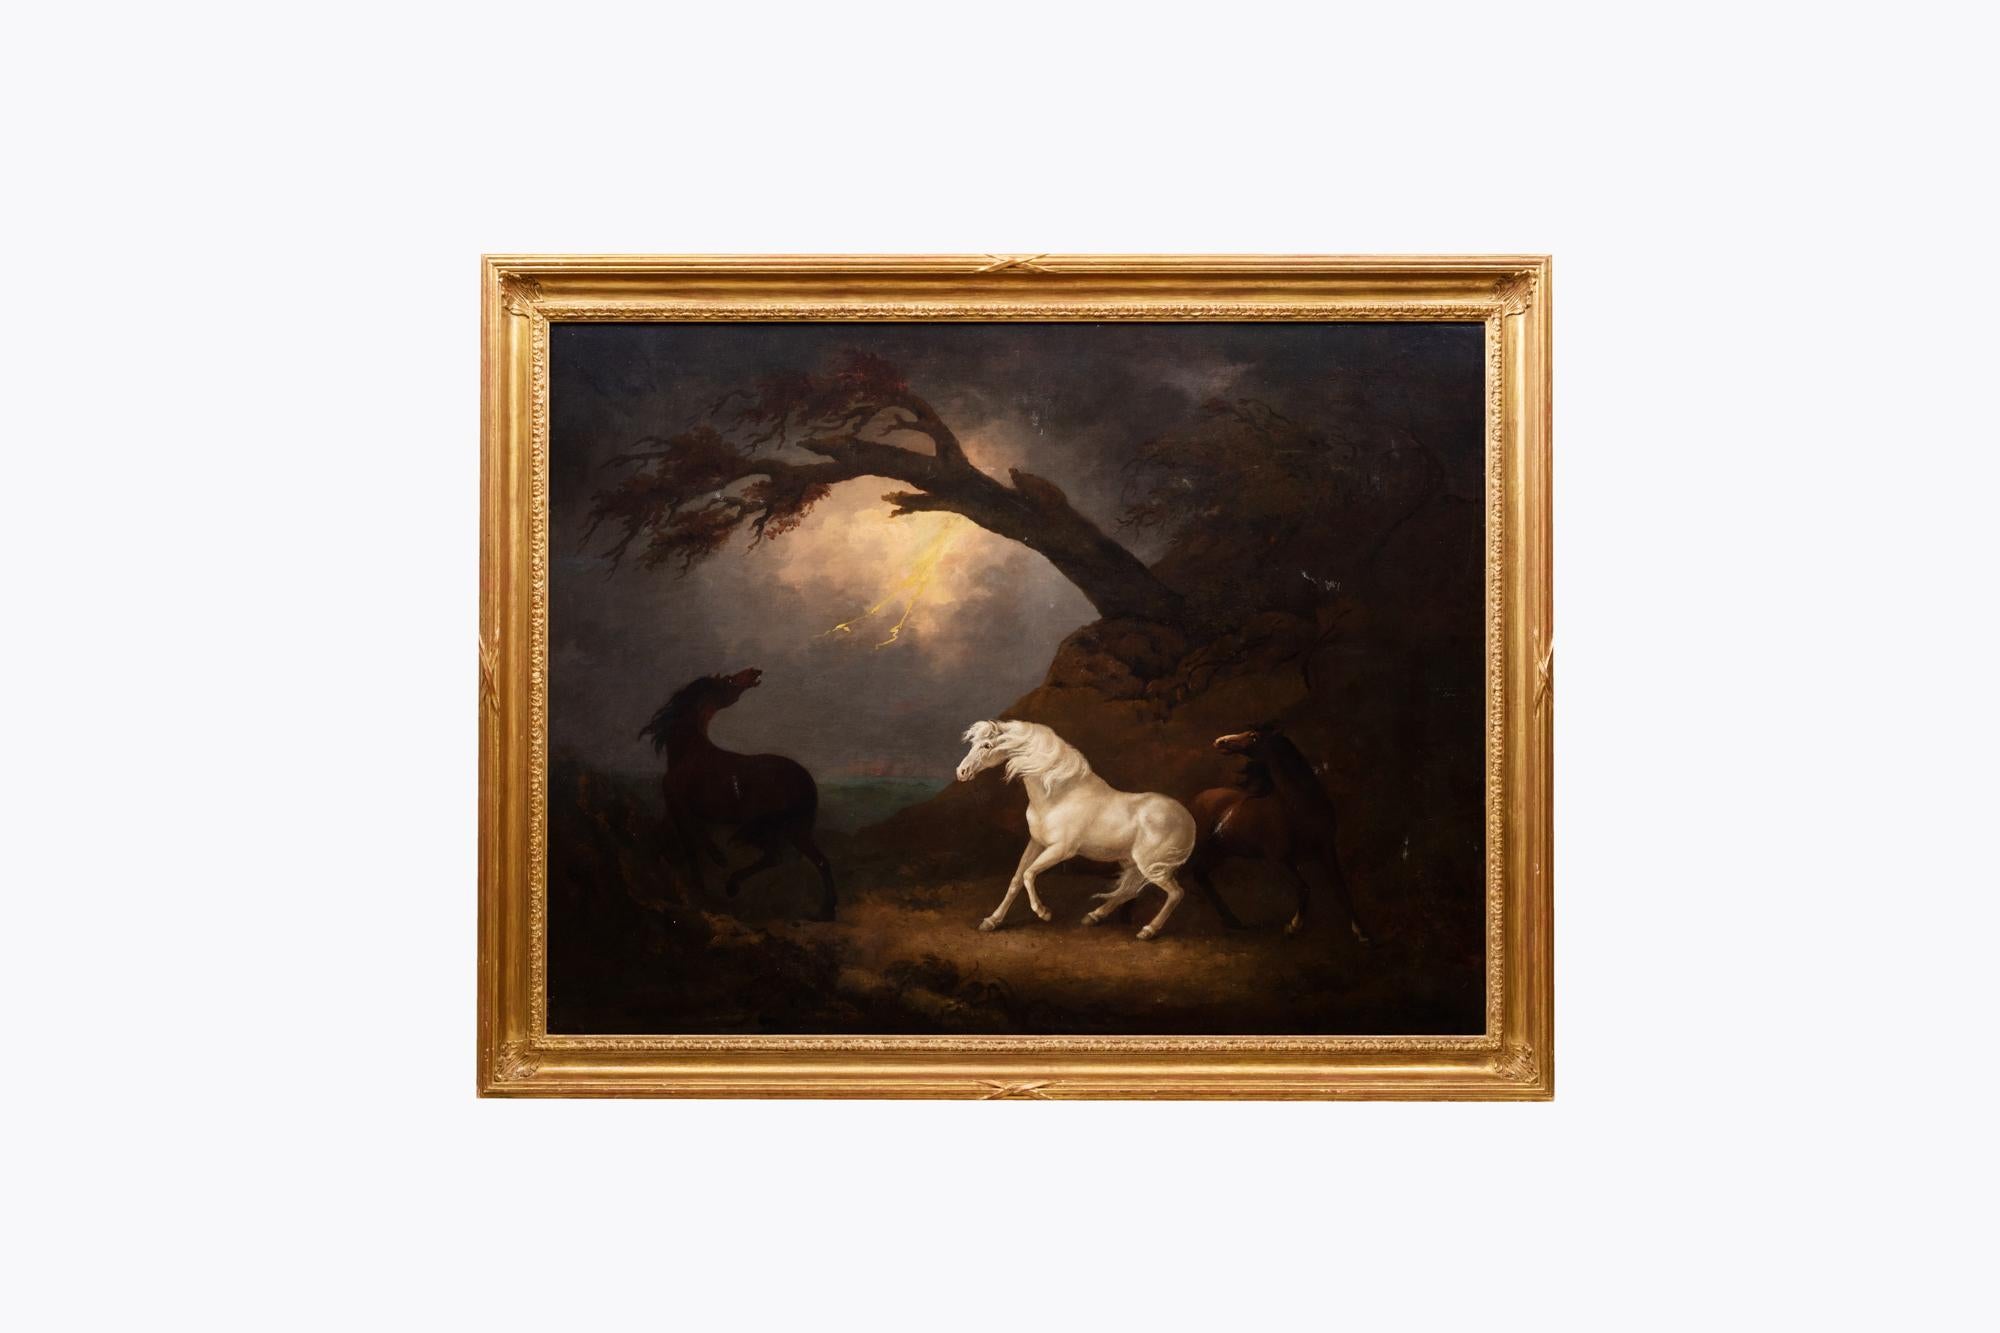 George Armfield (1808-1893) peinture à l'huile sur toile, représentant une scène atmosphérique avec trois chevaux au premier plan et un orage à l'arrière-plan. La tension dramatique est créée par le jeu d'ombres et de lumières et est renforcée par